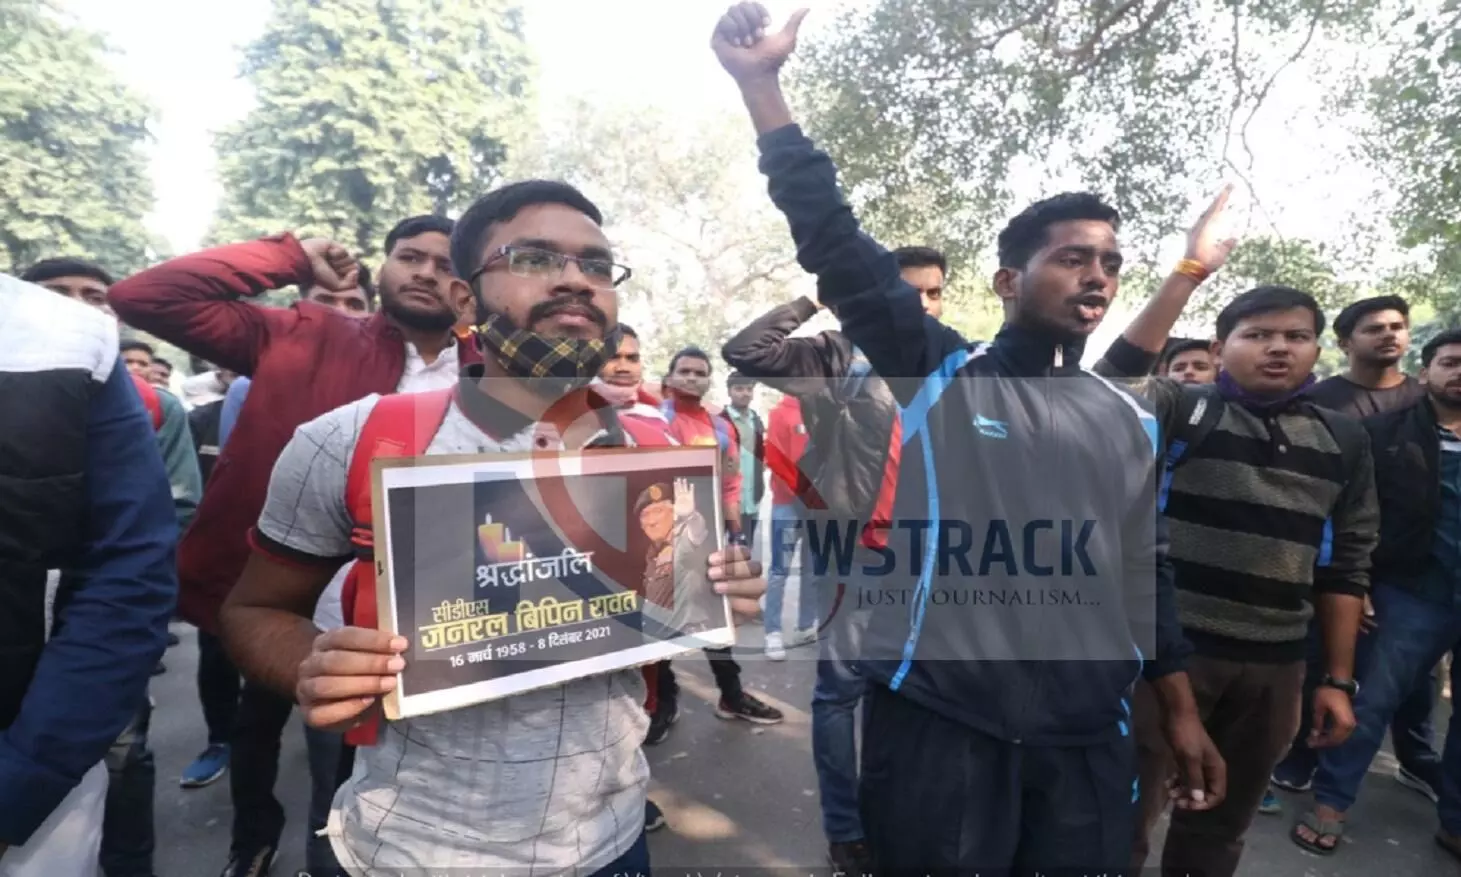 लखनऊ विश्वविद्यालय हॉस्टल के छात्रों ने निकाली शोक रैली